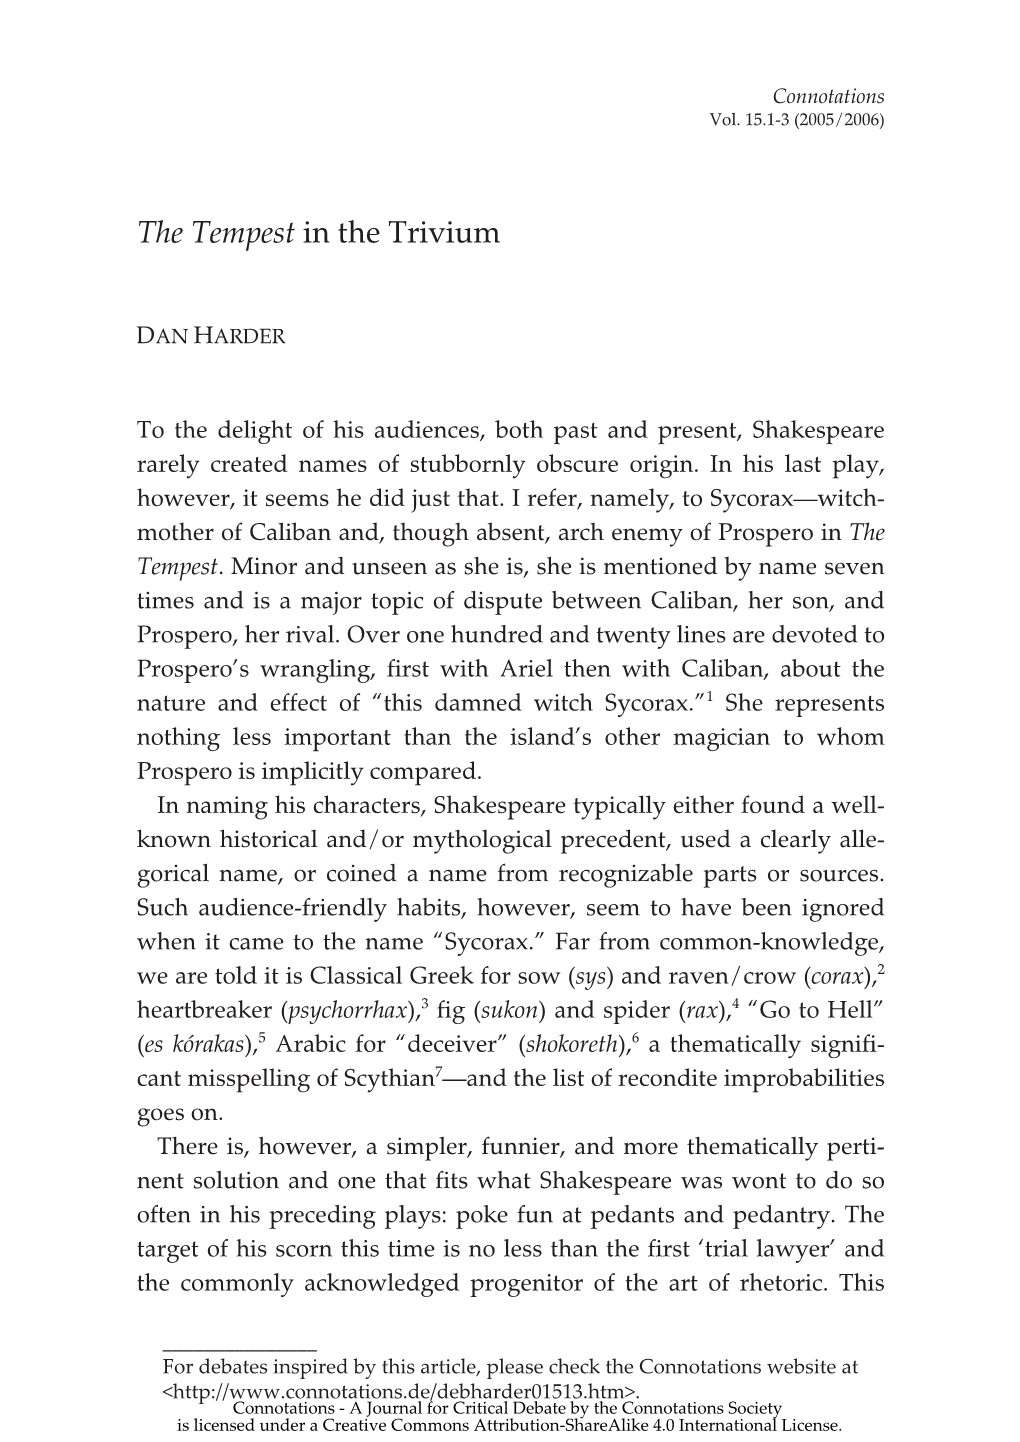 The Tempest in the Trivium